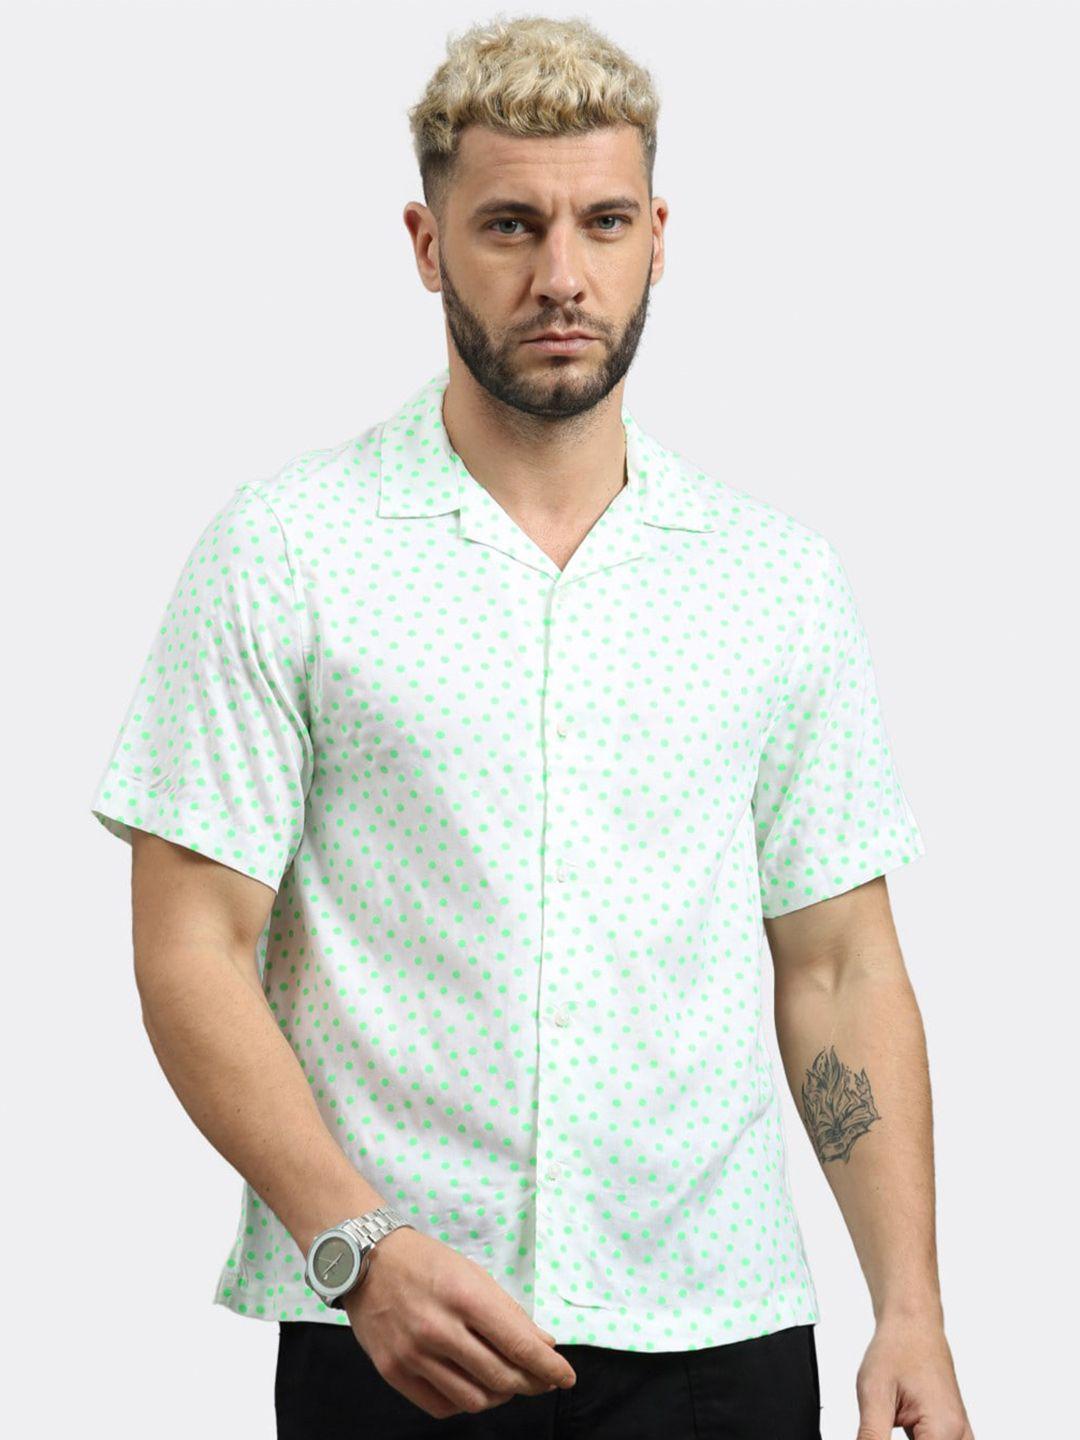 badmaash slim fit polka dots printed casual shirt